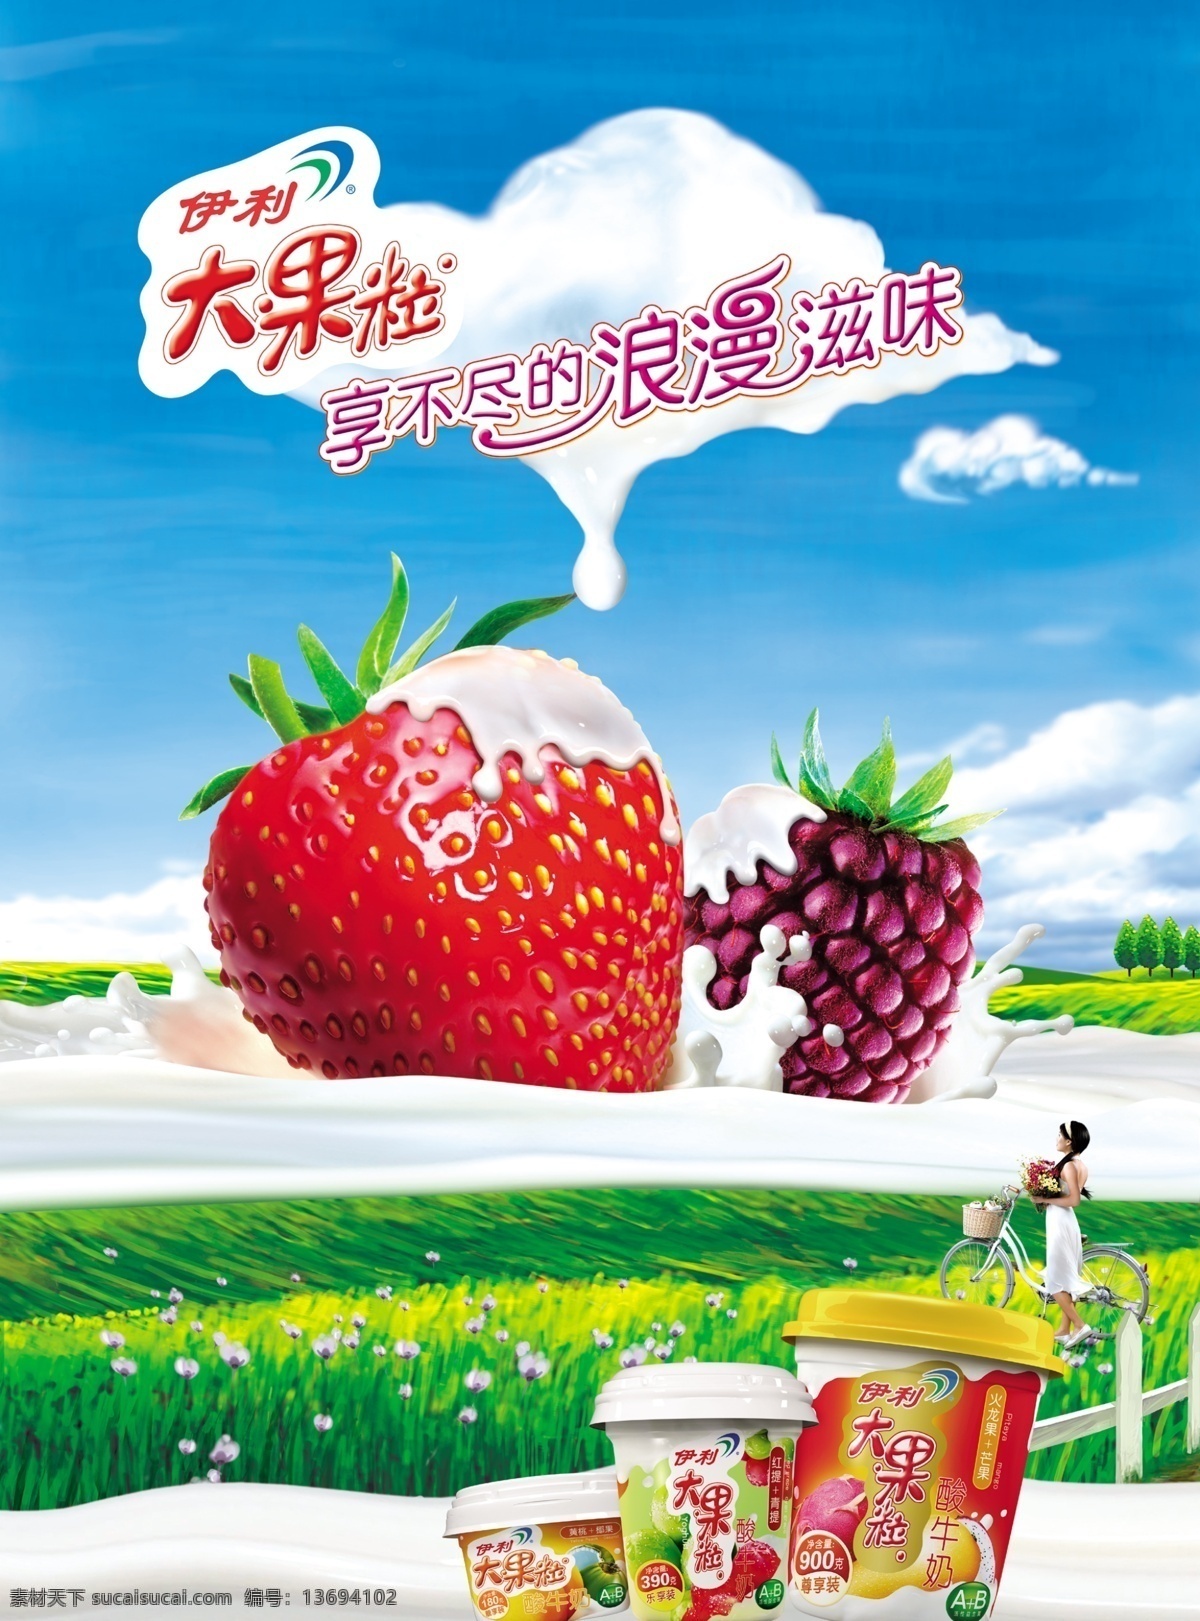 背景 草莓 大地 广告设计模板 食品 天空 菠萝 模板下载 草莓菠萝 海报 宣传单 饮料 源文件 psd源文件 餐饮素材